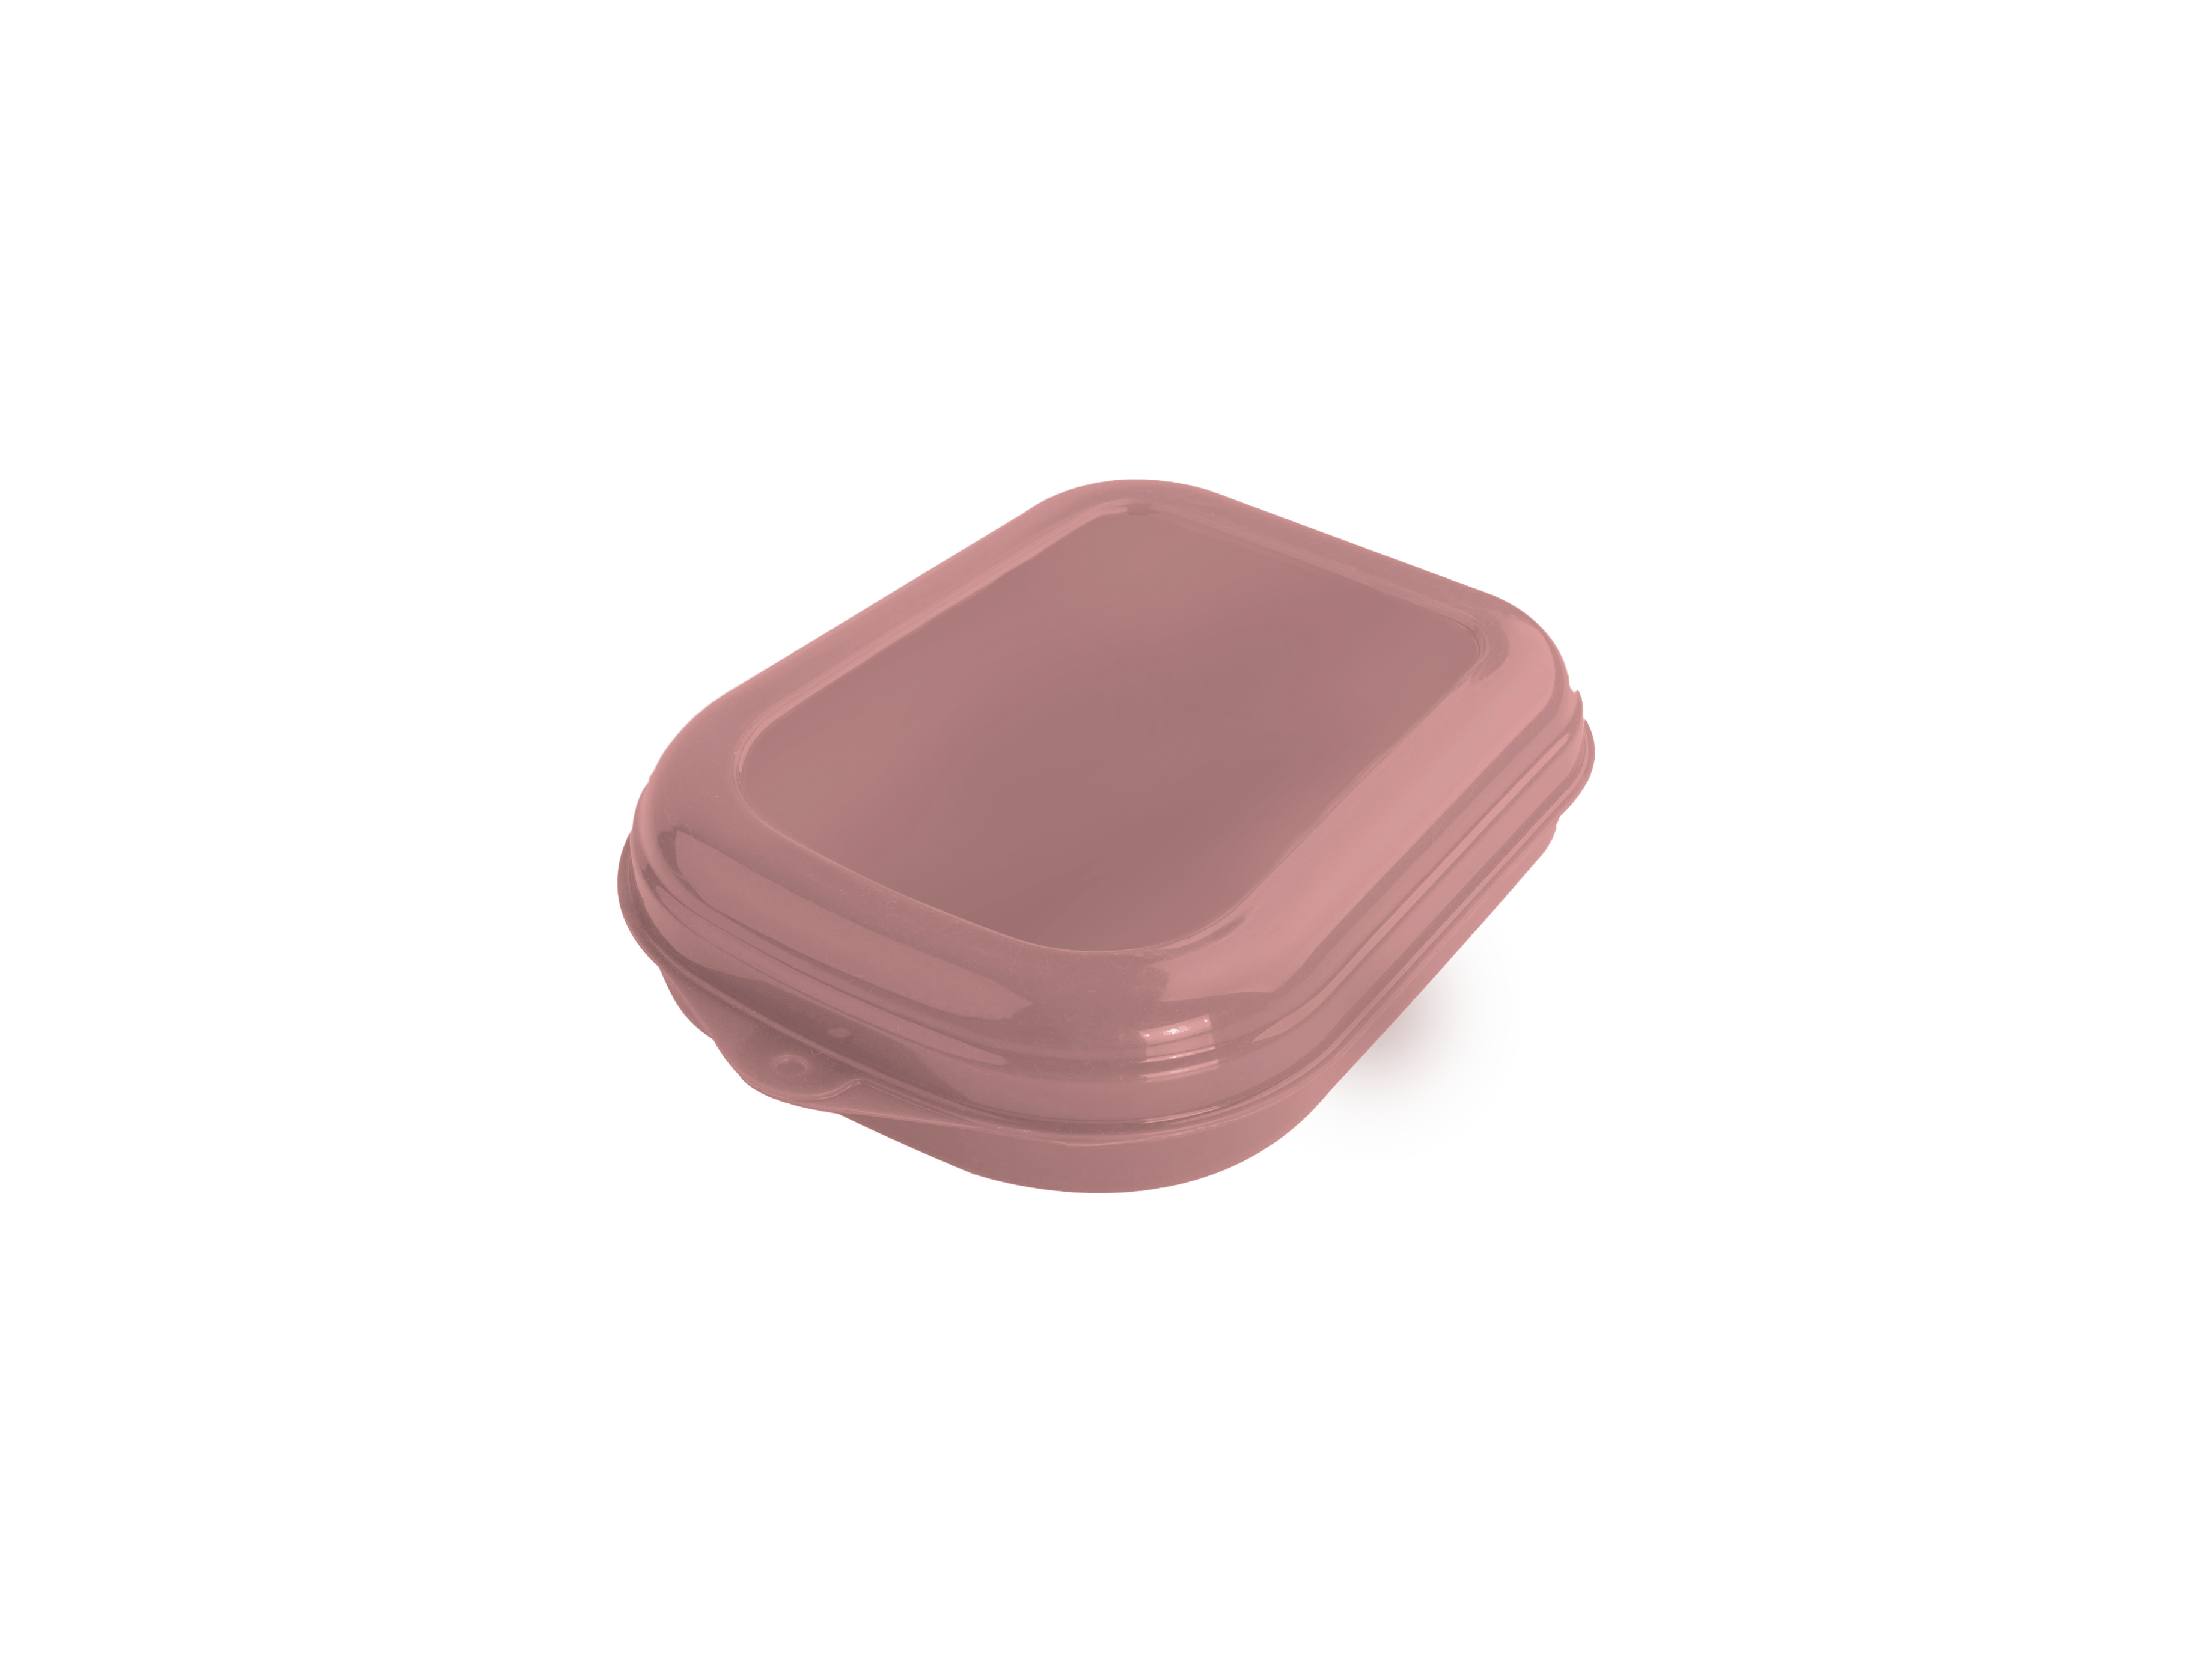 Imagem do produto: Sandwich container 3475